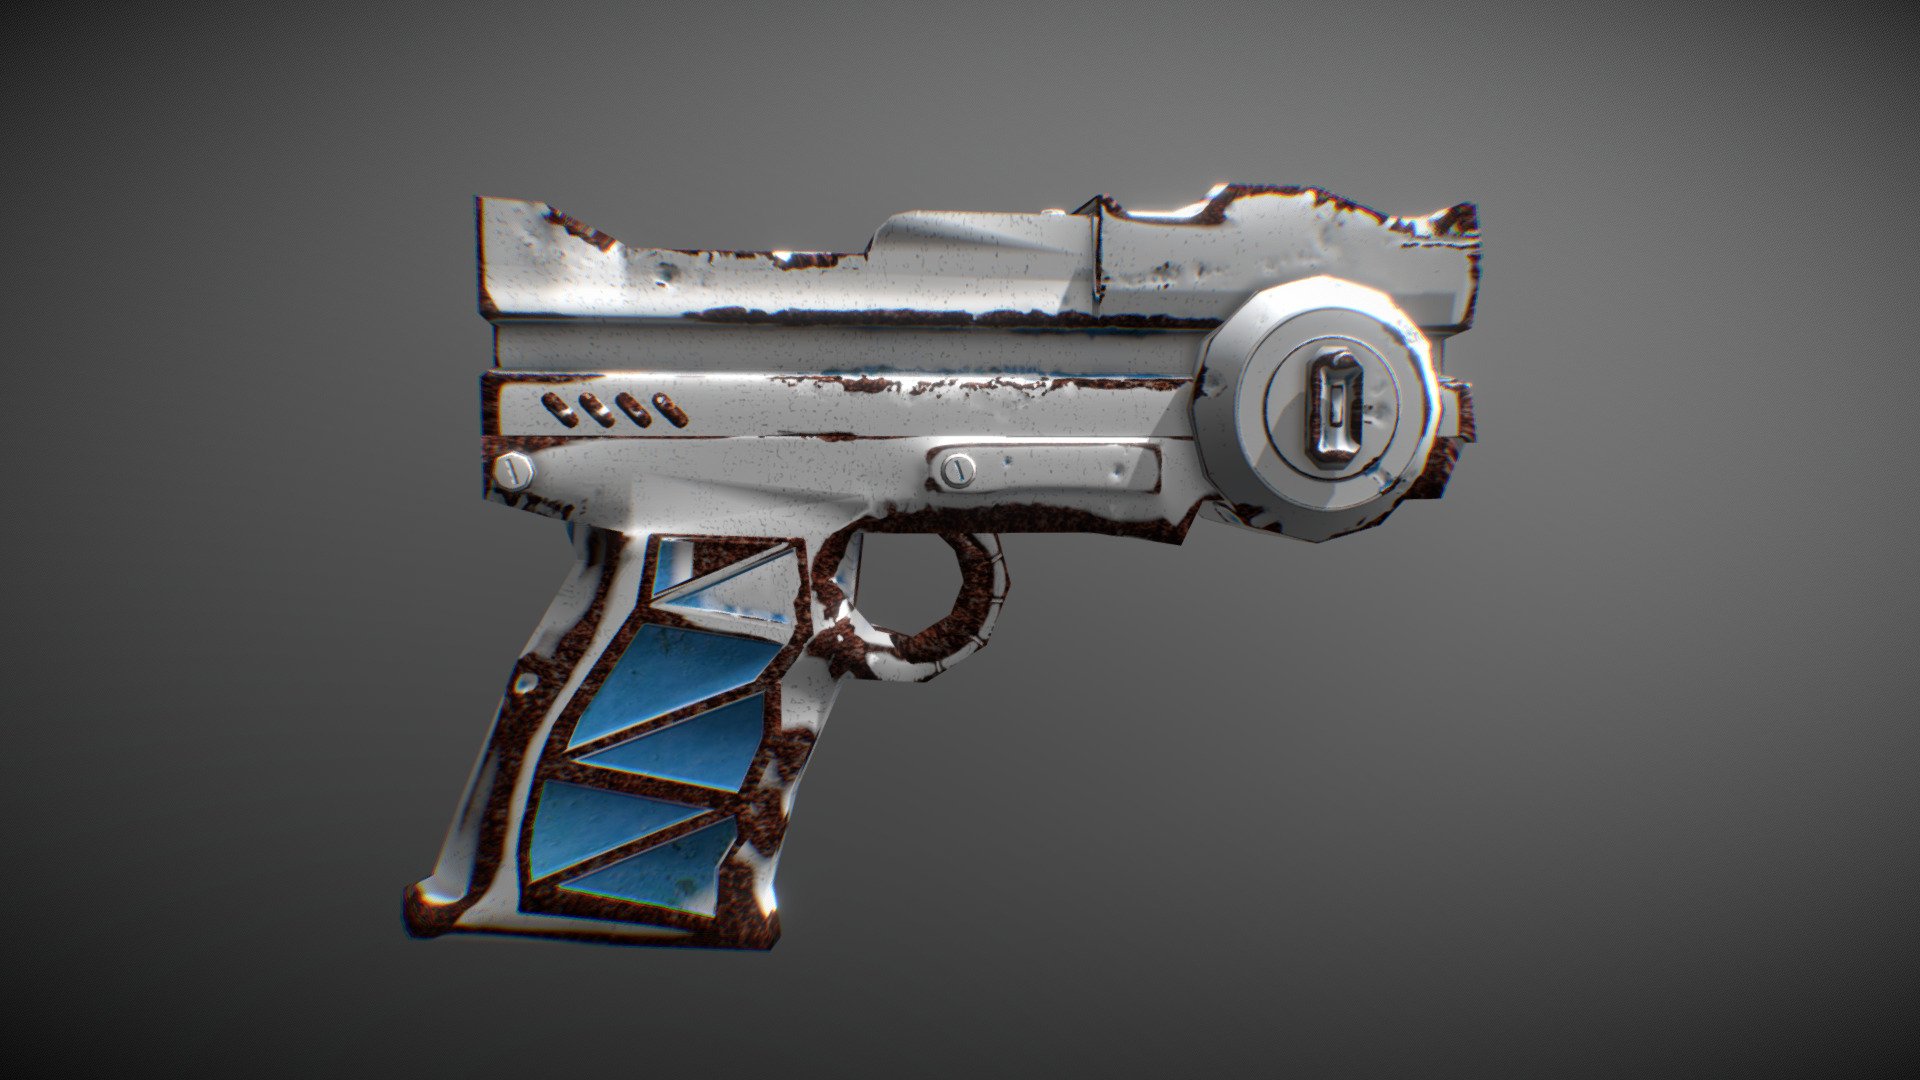 Cyberpunk gun 3d model фото 1